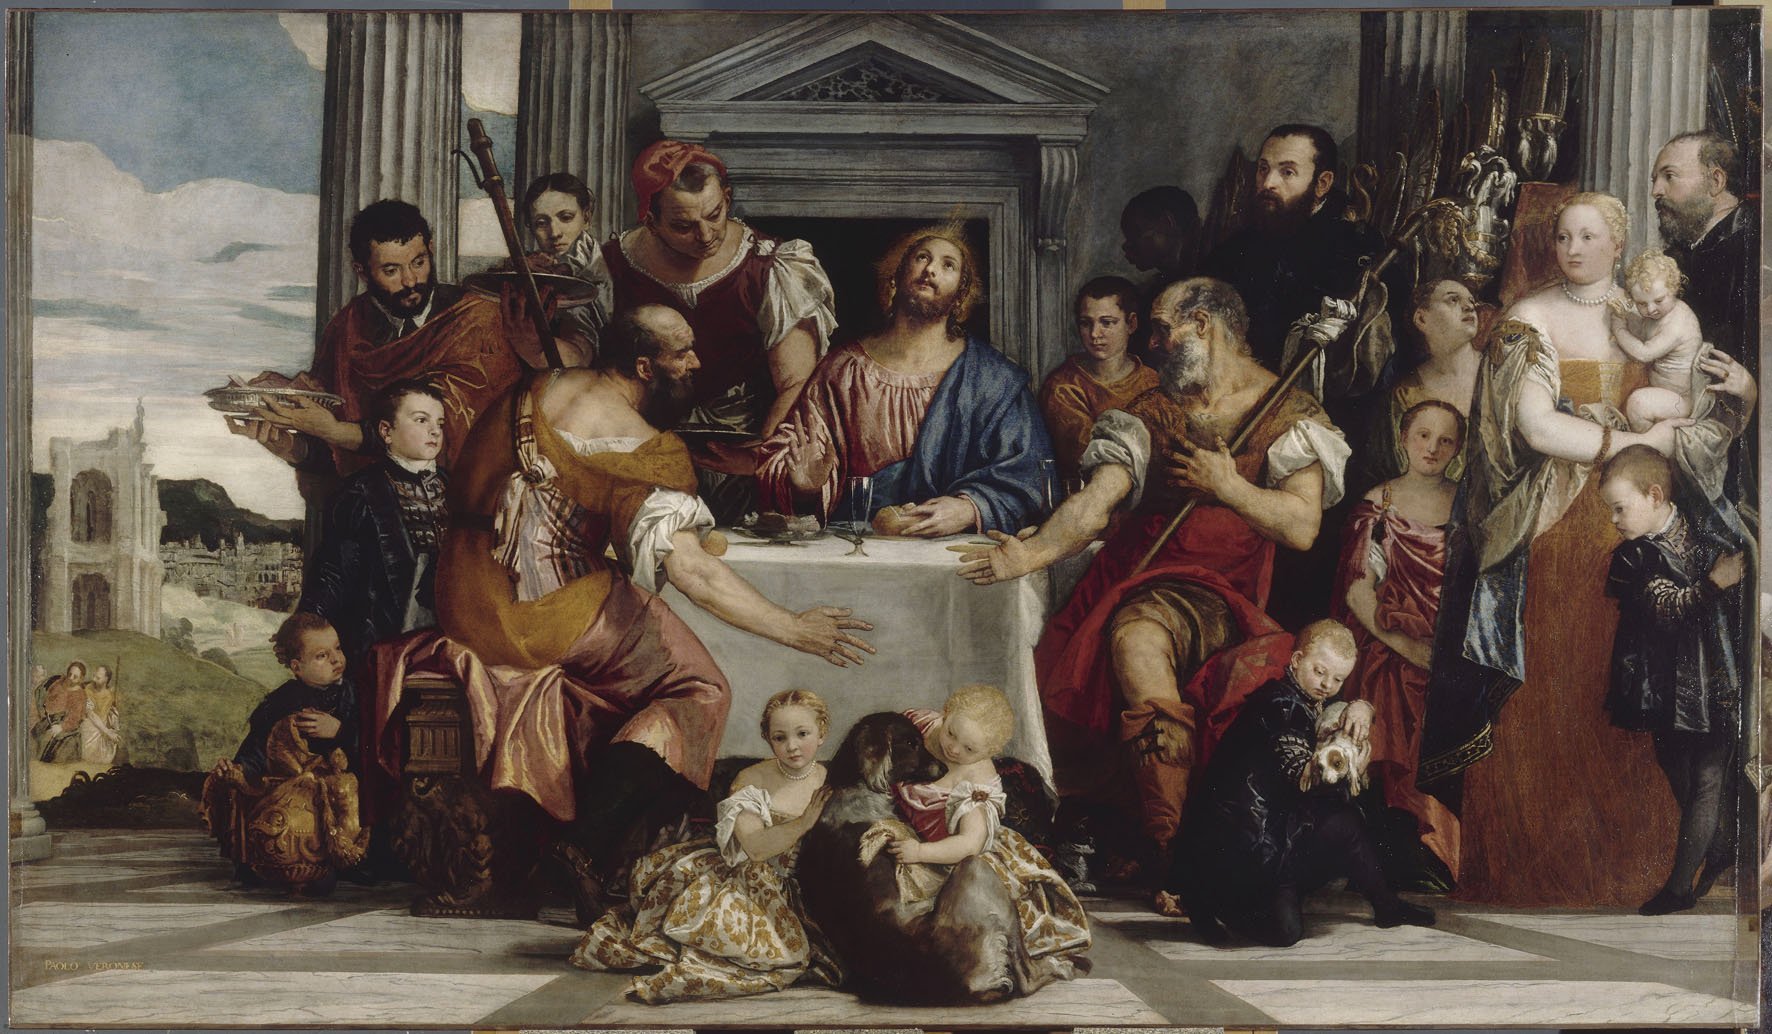 Paolo Veronese (1528-1588). « The Supper at Emmaus », about 1555. Oil on canvas, 290 × 488 cm. Musée du Louvre, Paris © RMN (Musée du Louvre)/Gérard Blot